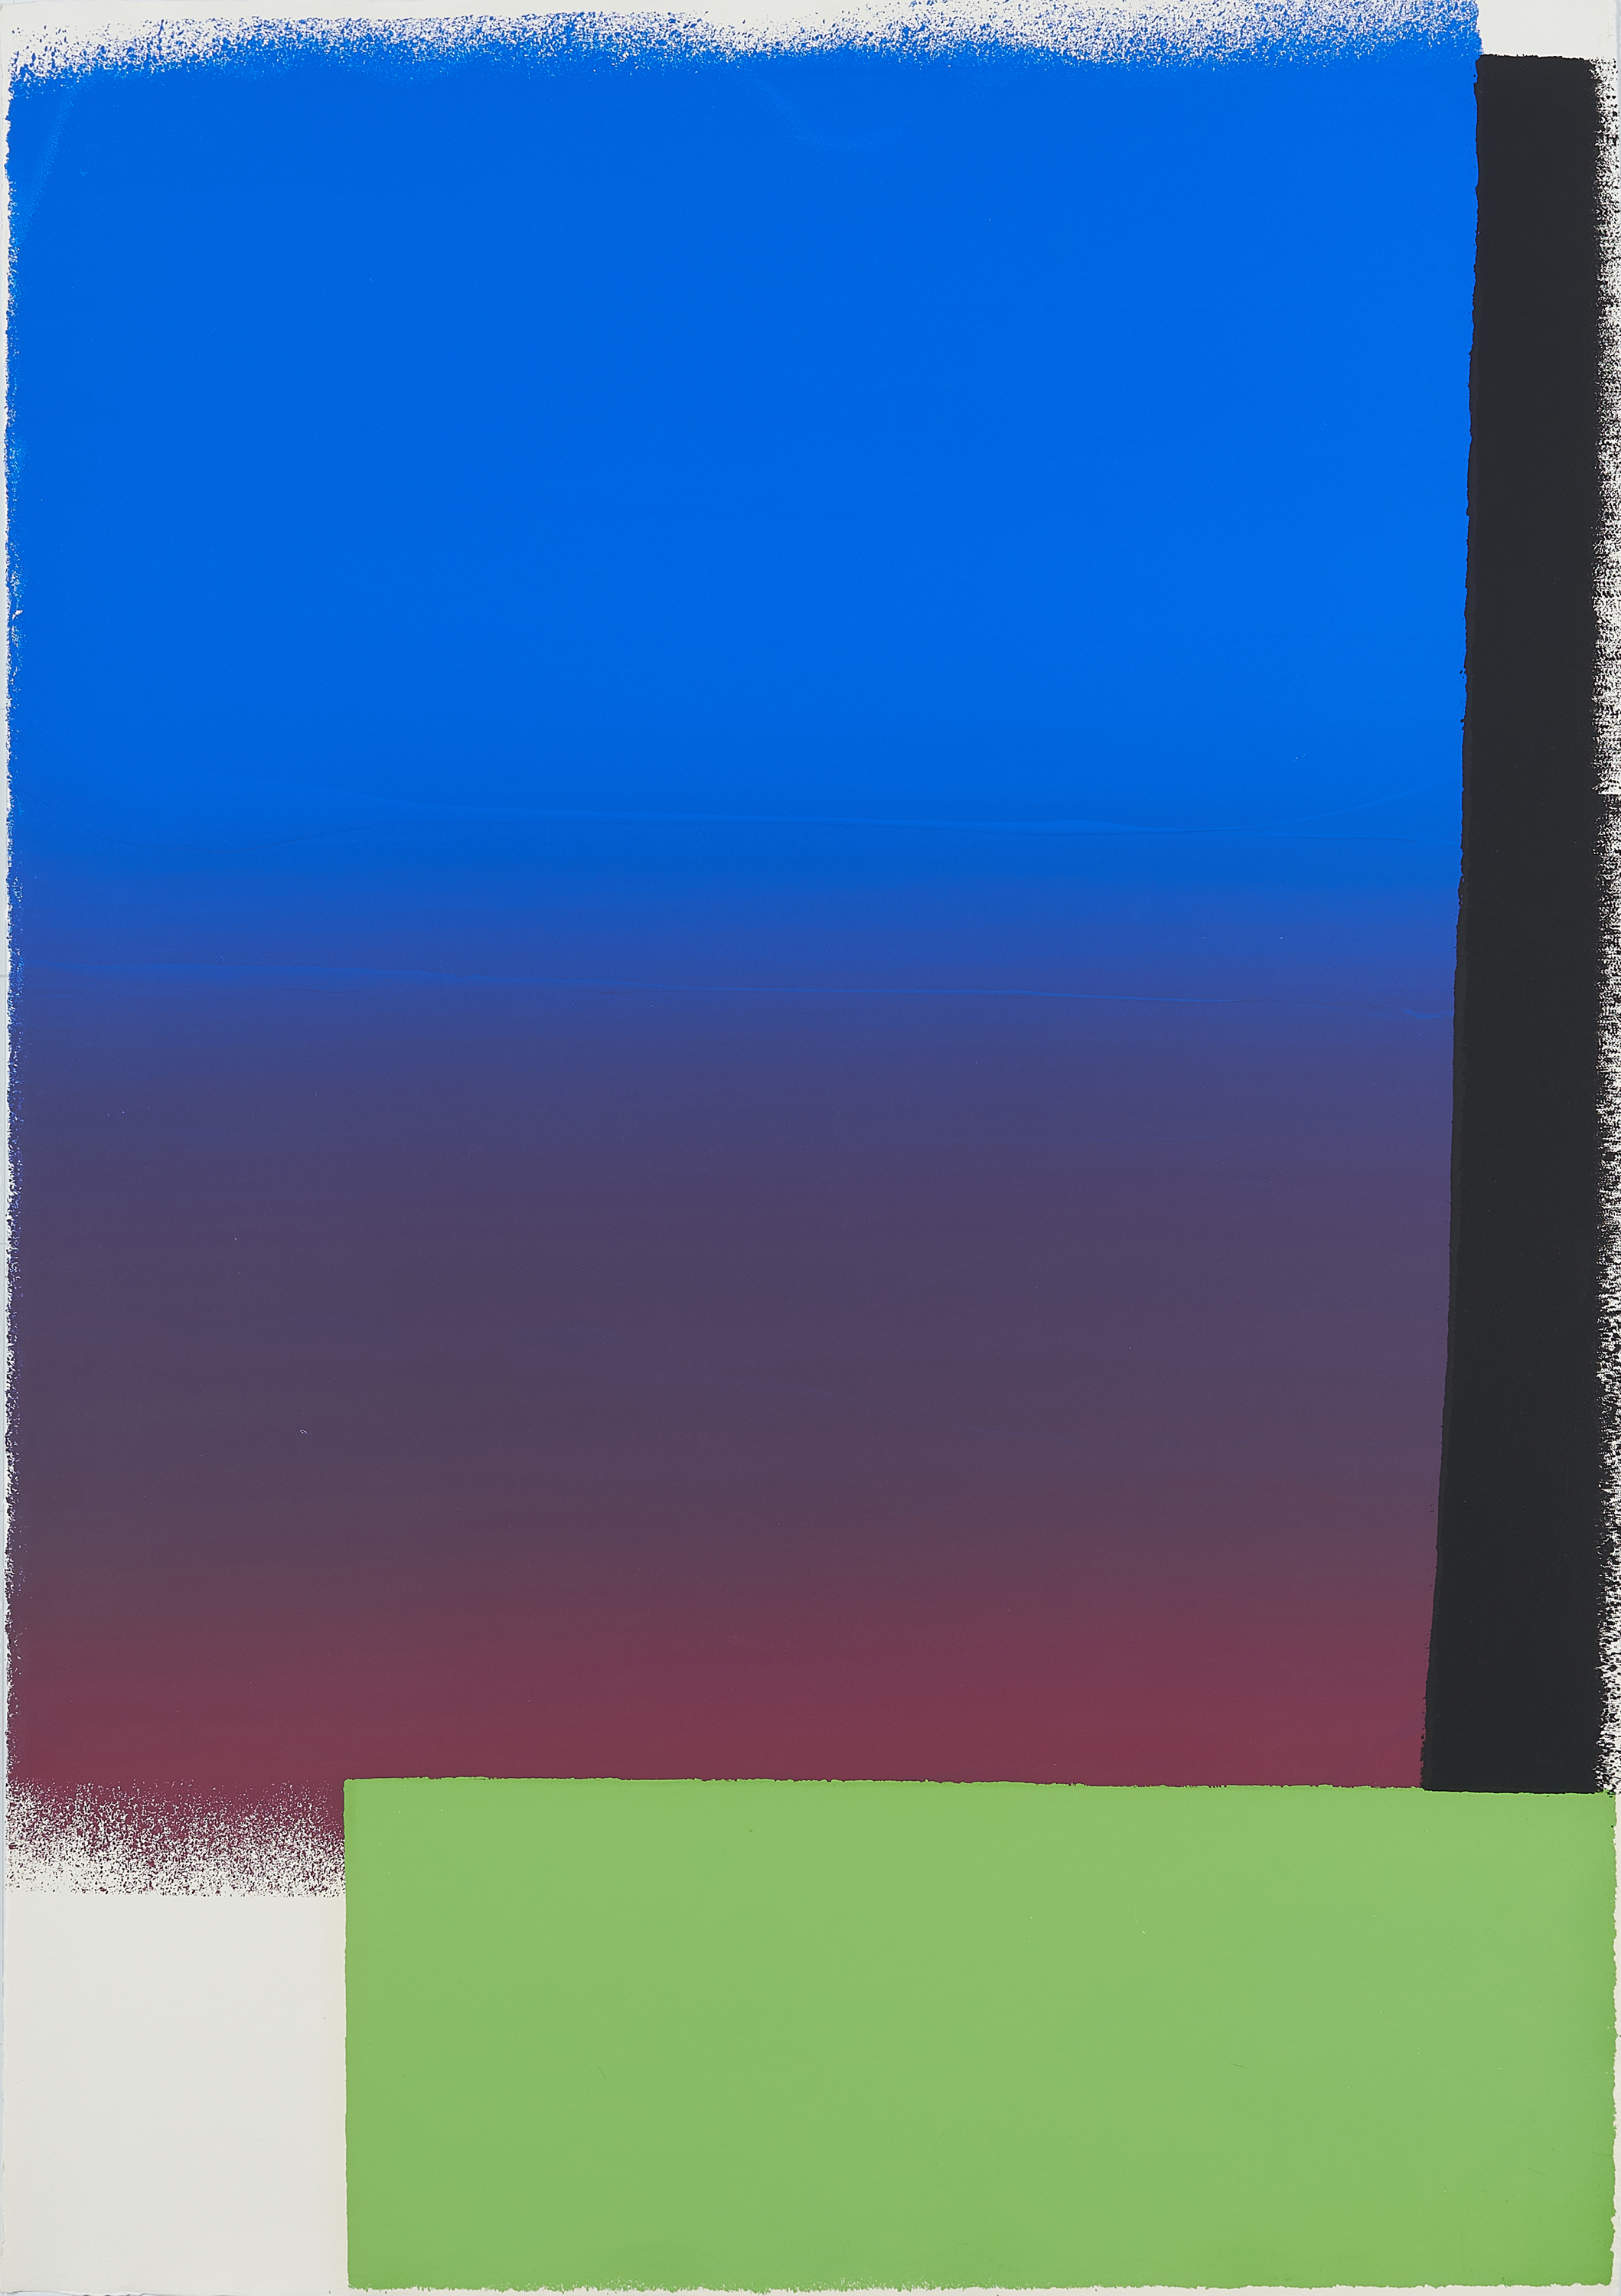 Rupprecht Geiger - Moduliertes Blau ueber leuchtgruenem Balken  blau bis rot - schwarz - leuchtgruen, 70001-189, Van Ham Kunstauktionen